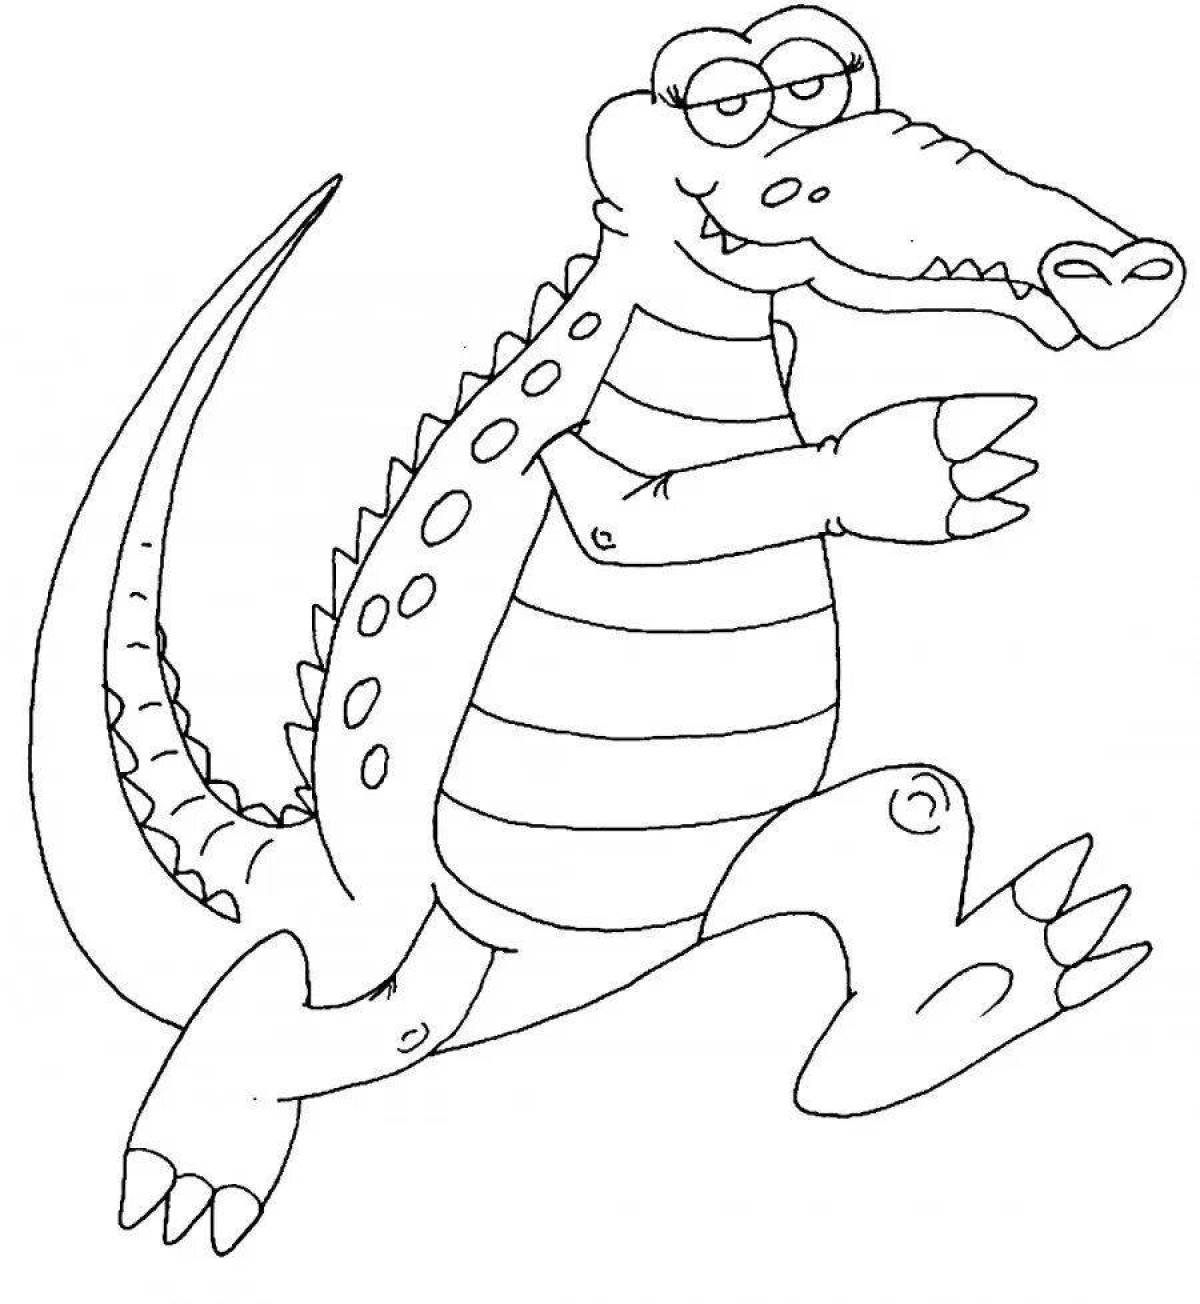 Крокодил рисунок для детей раскраска